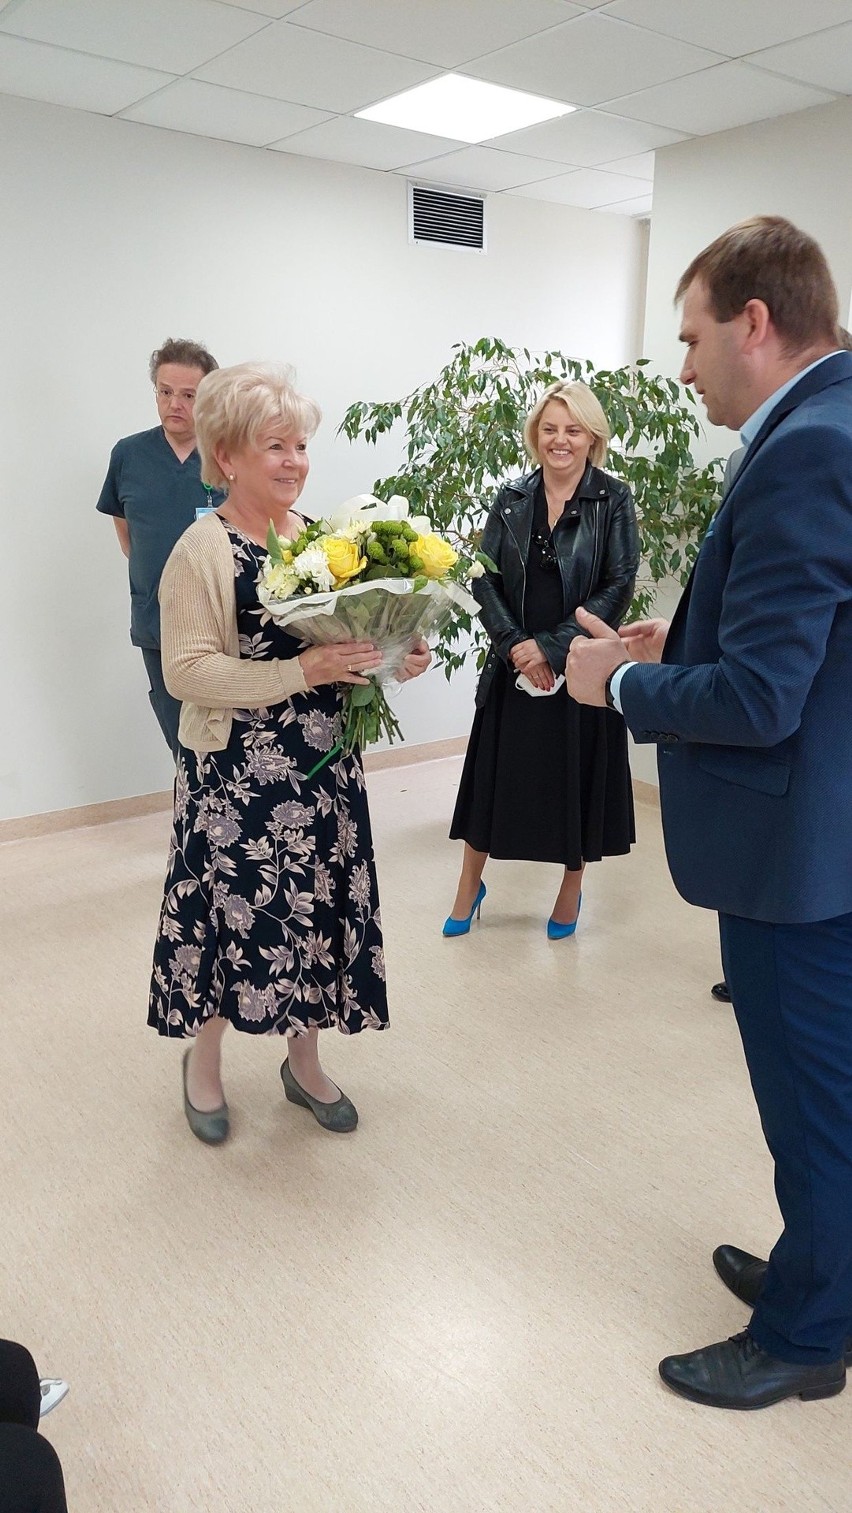 W starachowickim szpitalu gorąco pożegnano Jolantę Kręcką, a przywitano Milenę Witczak. Zobacz zdjęcia